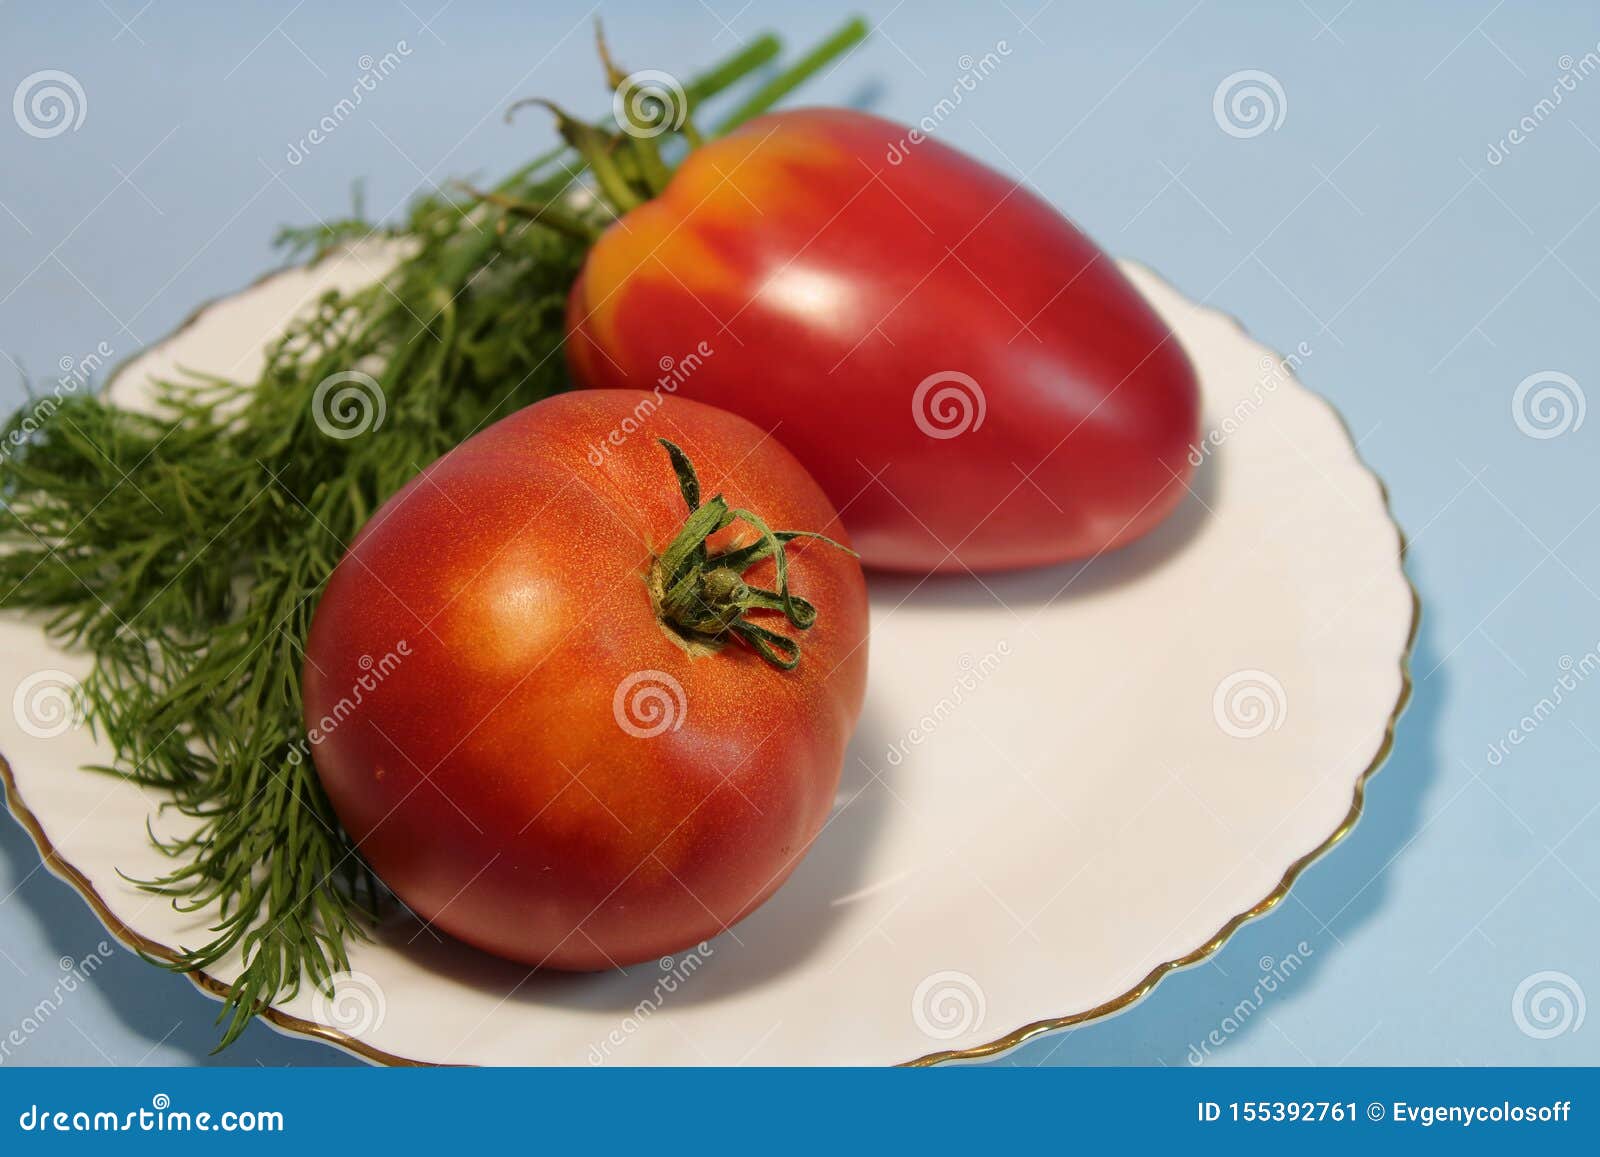 Tomaten in Einer Platte Mit Dill Auf Einem Grauen Hintergrund Stockbild ...